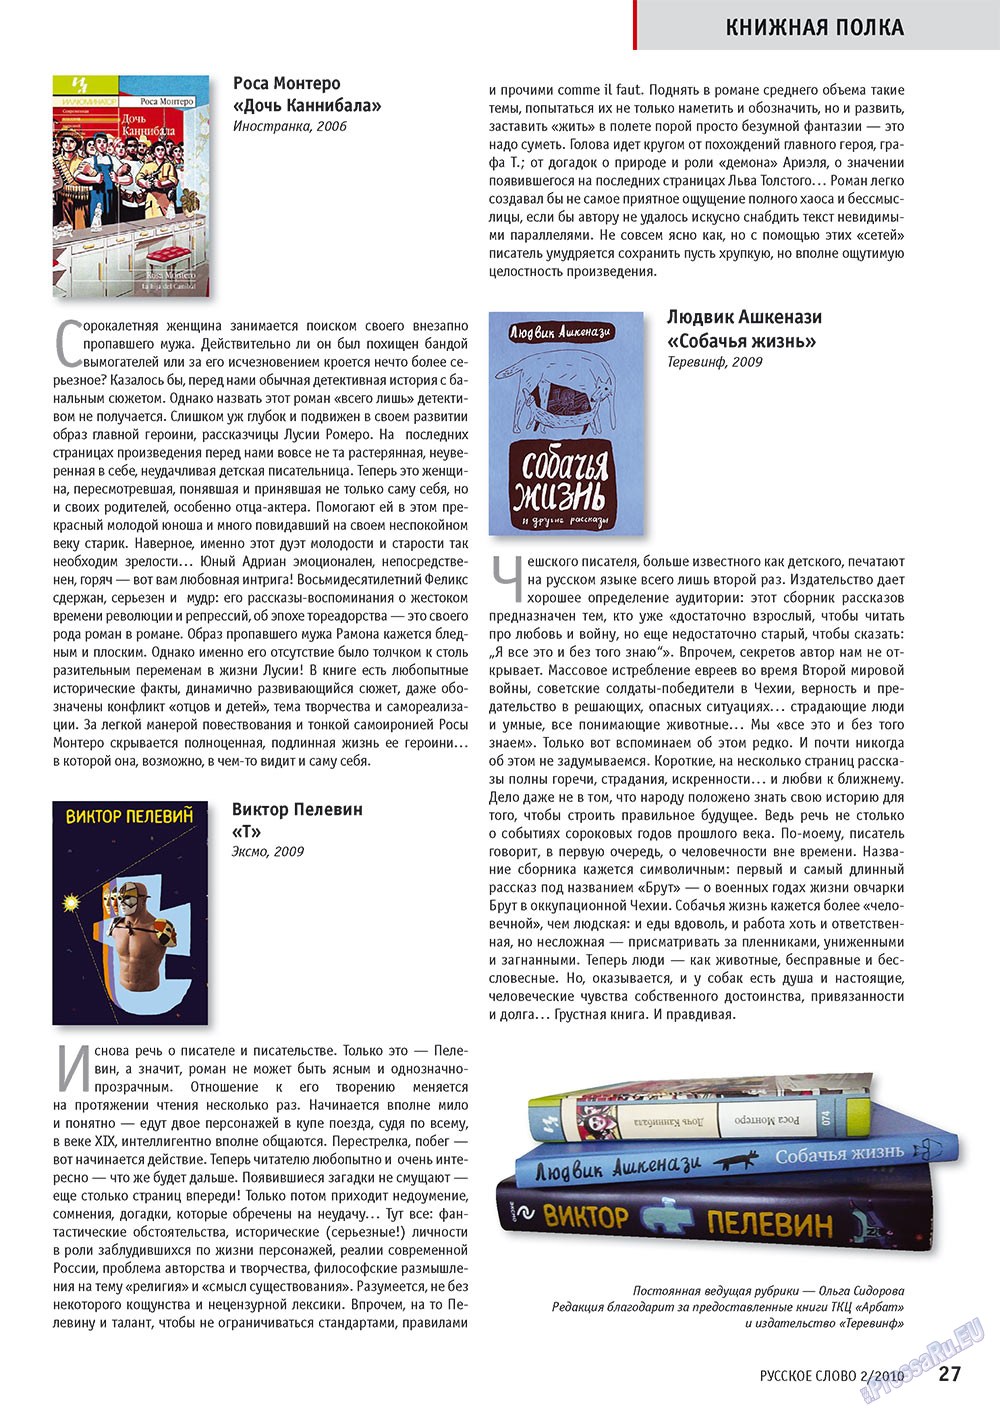 Русское слово (журнал). 2010 год, номер 2, стр. 29